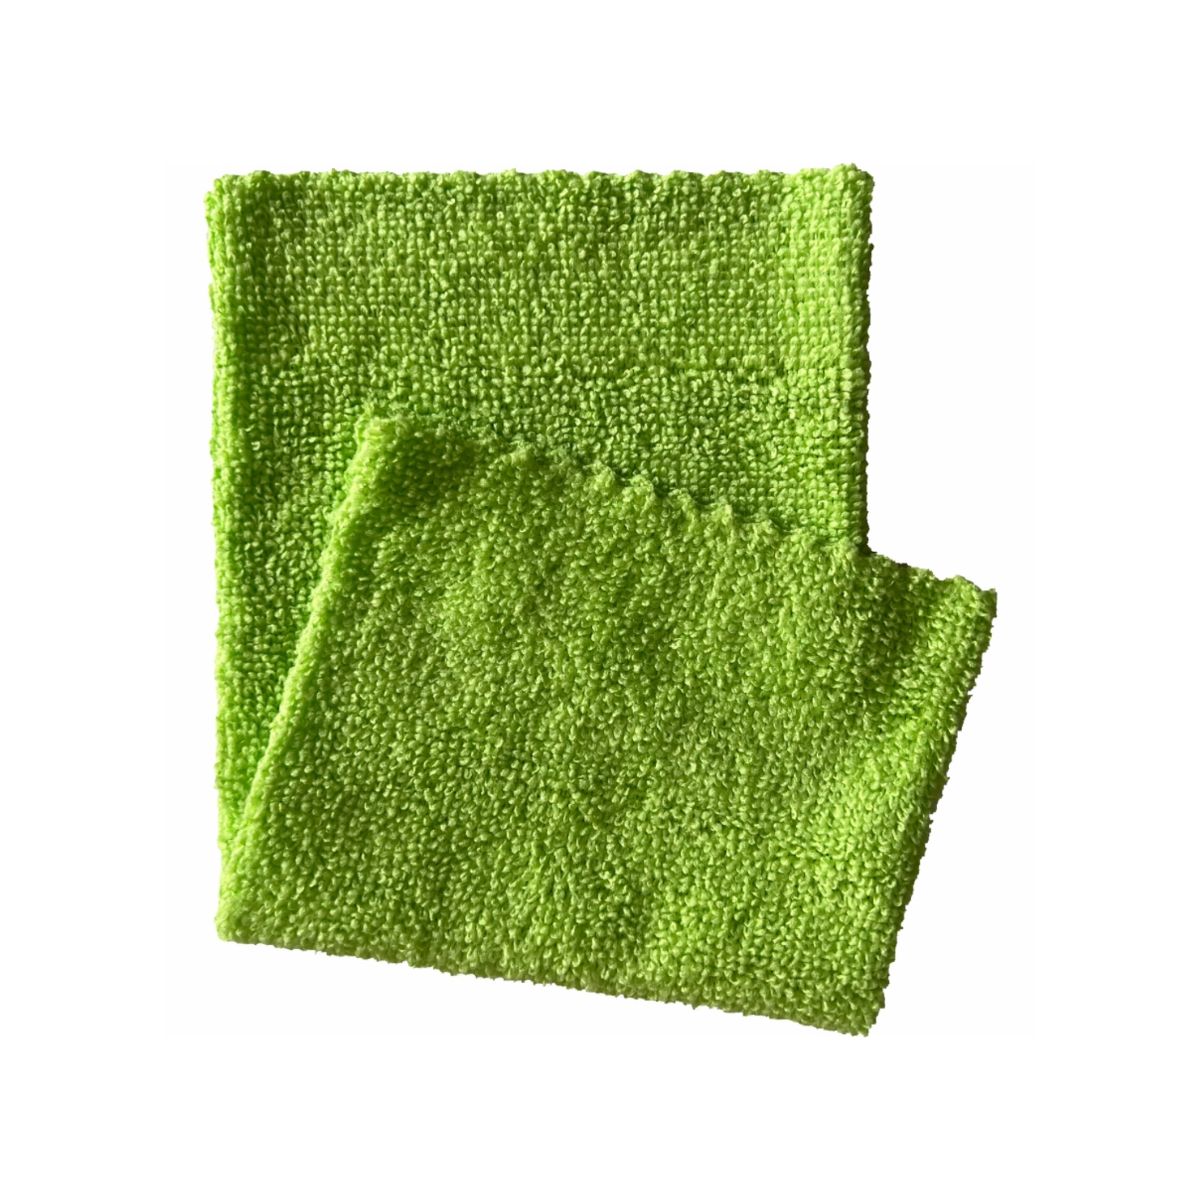 Ein grünes Arcora Microfasertuch ECO-LINE 2in1 Reinigungstuch mit einer gefalteten Ecke, isoliert auf weißem Hintergrund. Die Textur des Tuchs ist sichtbar und hebt Arcora hervor.